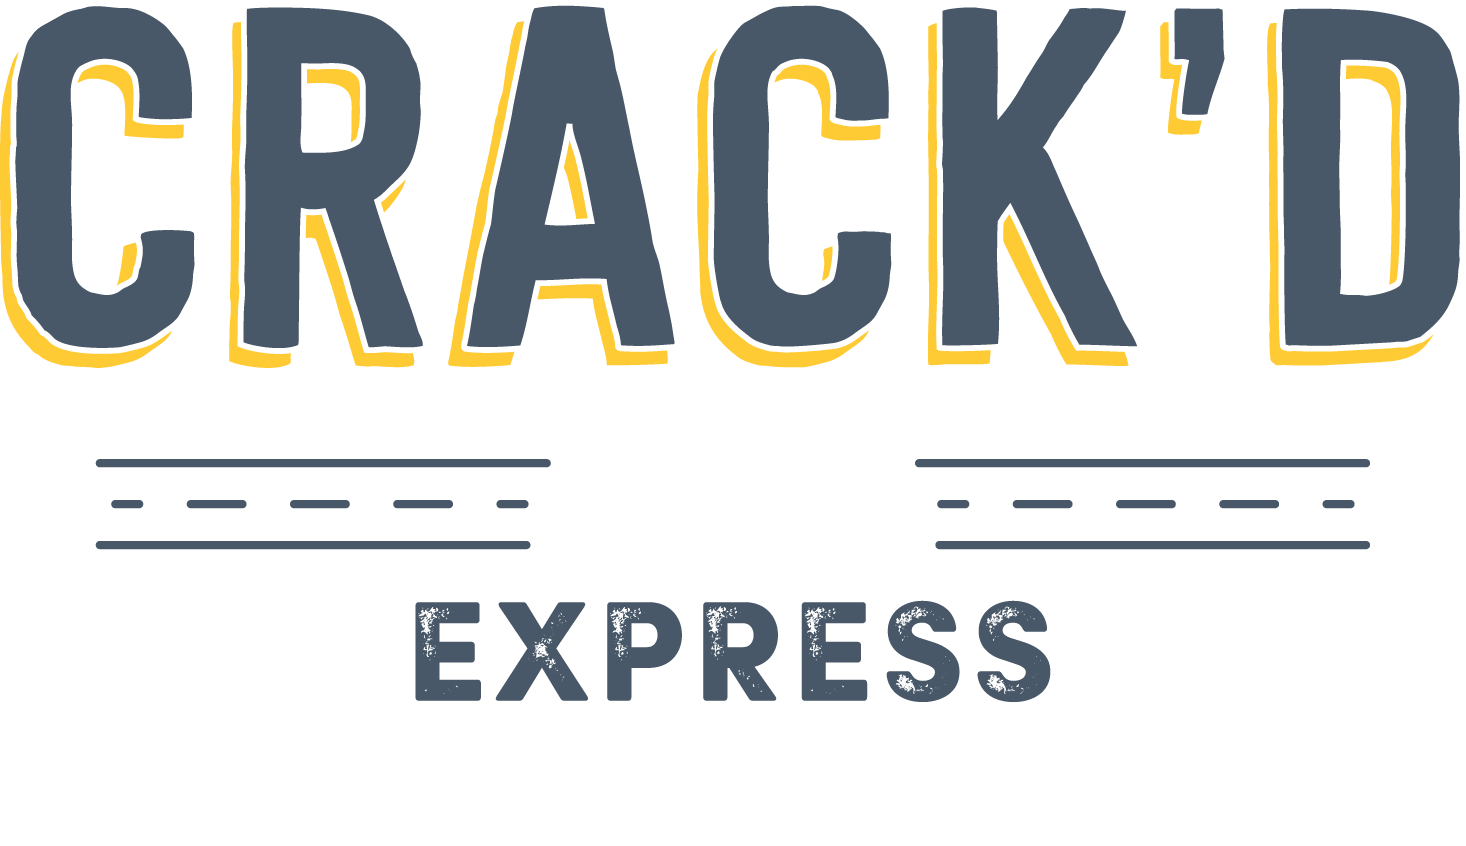 Crack'd Express logo image